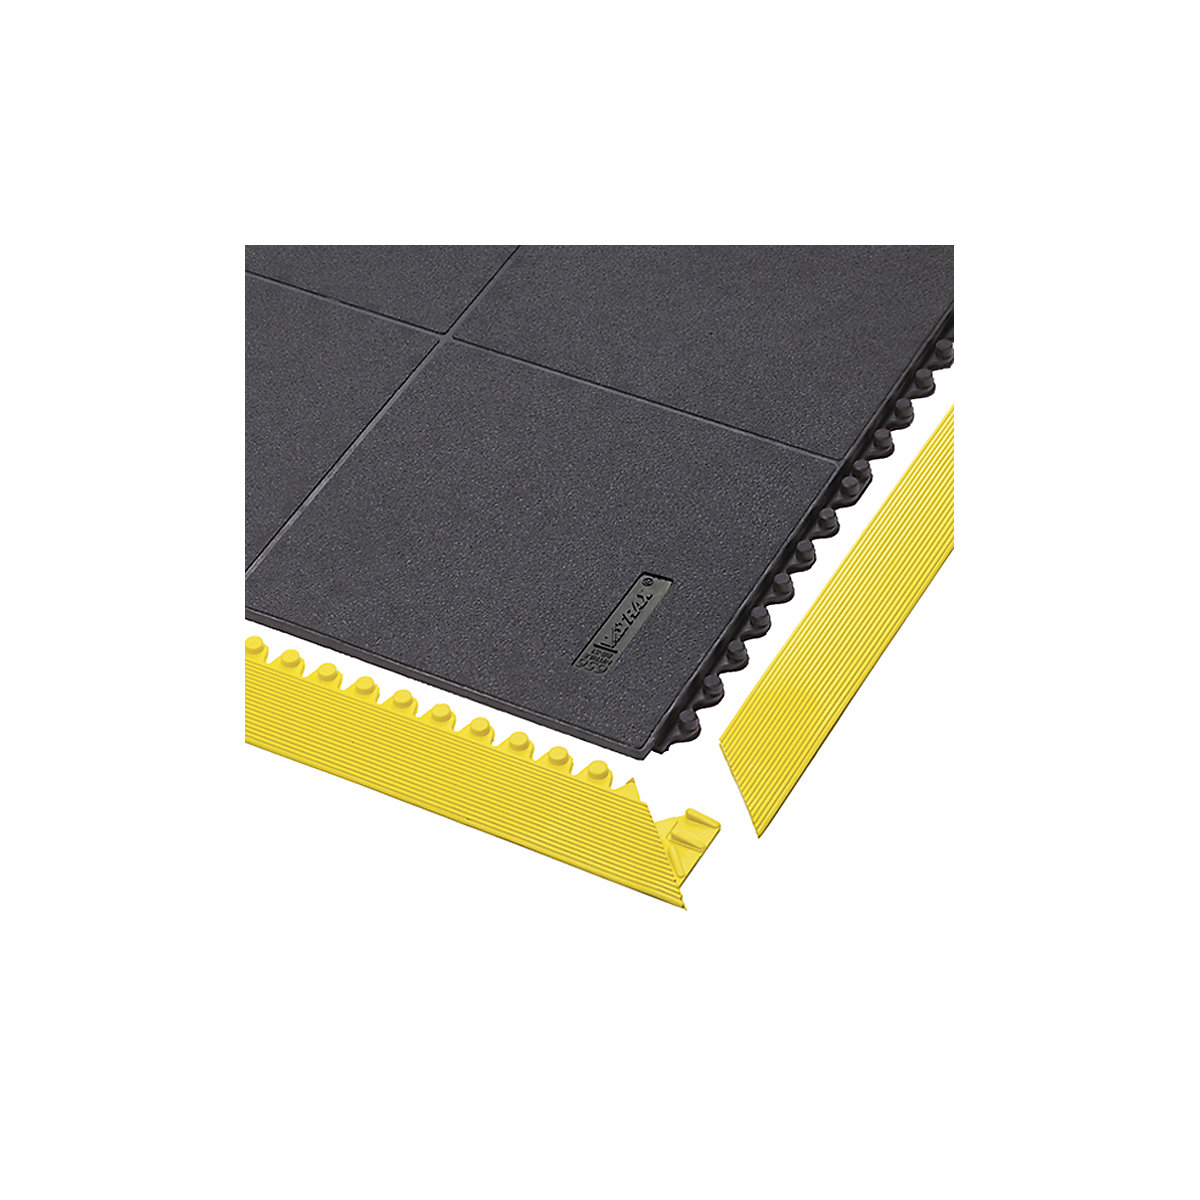 Sestavljiva podloga Cushion Ease Solid, zaprta nitrilna guma - NOTRAX